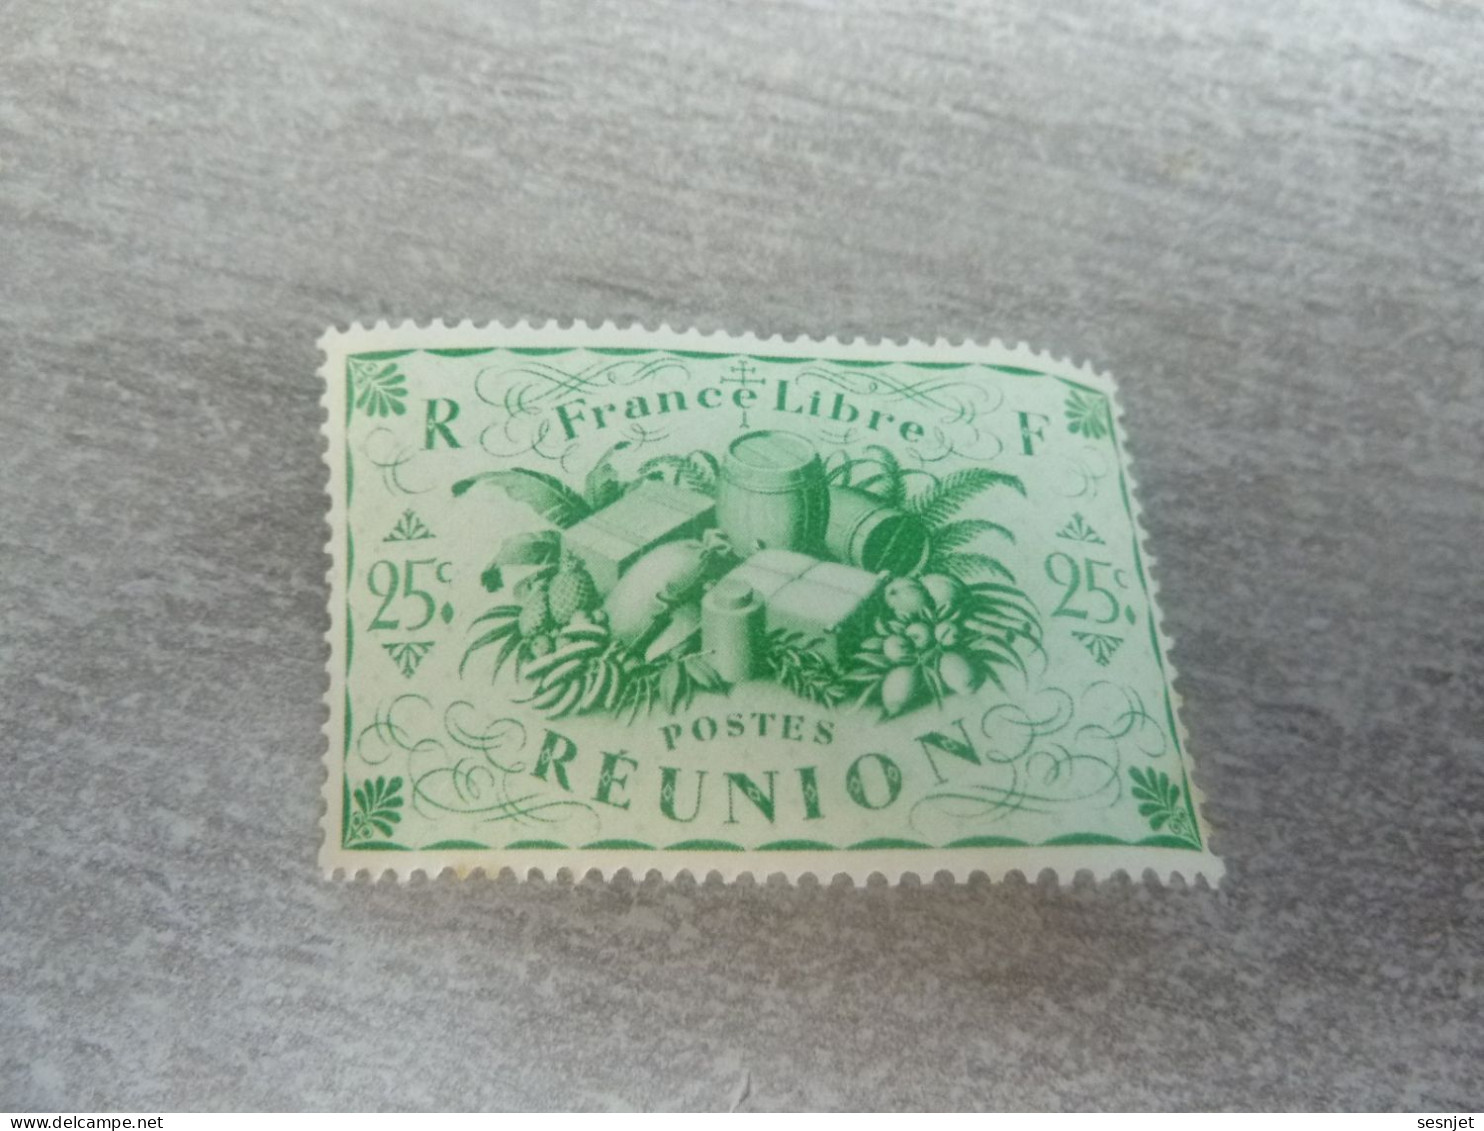 Série De Londres - France-Libre - Réunion  - 25c. - Yt 235 - Vert-jaune - Neuf Sans Trace De Charnière - Année 1943 - - Nuevos